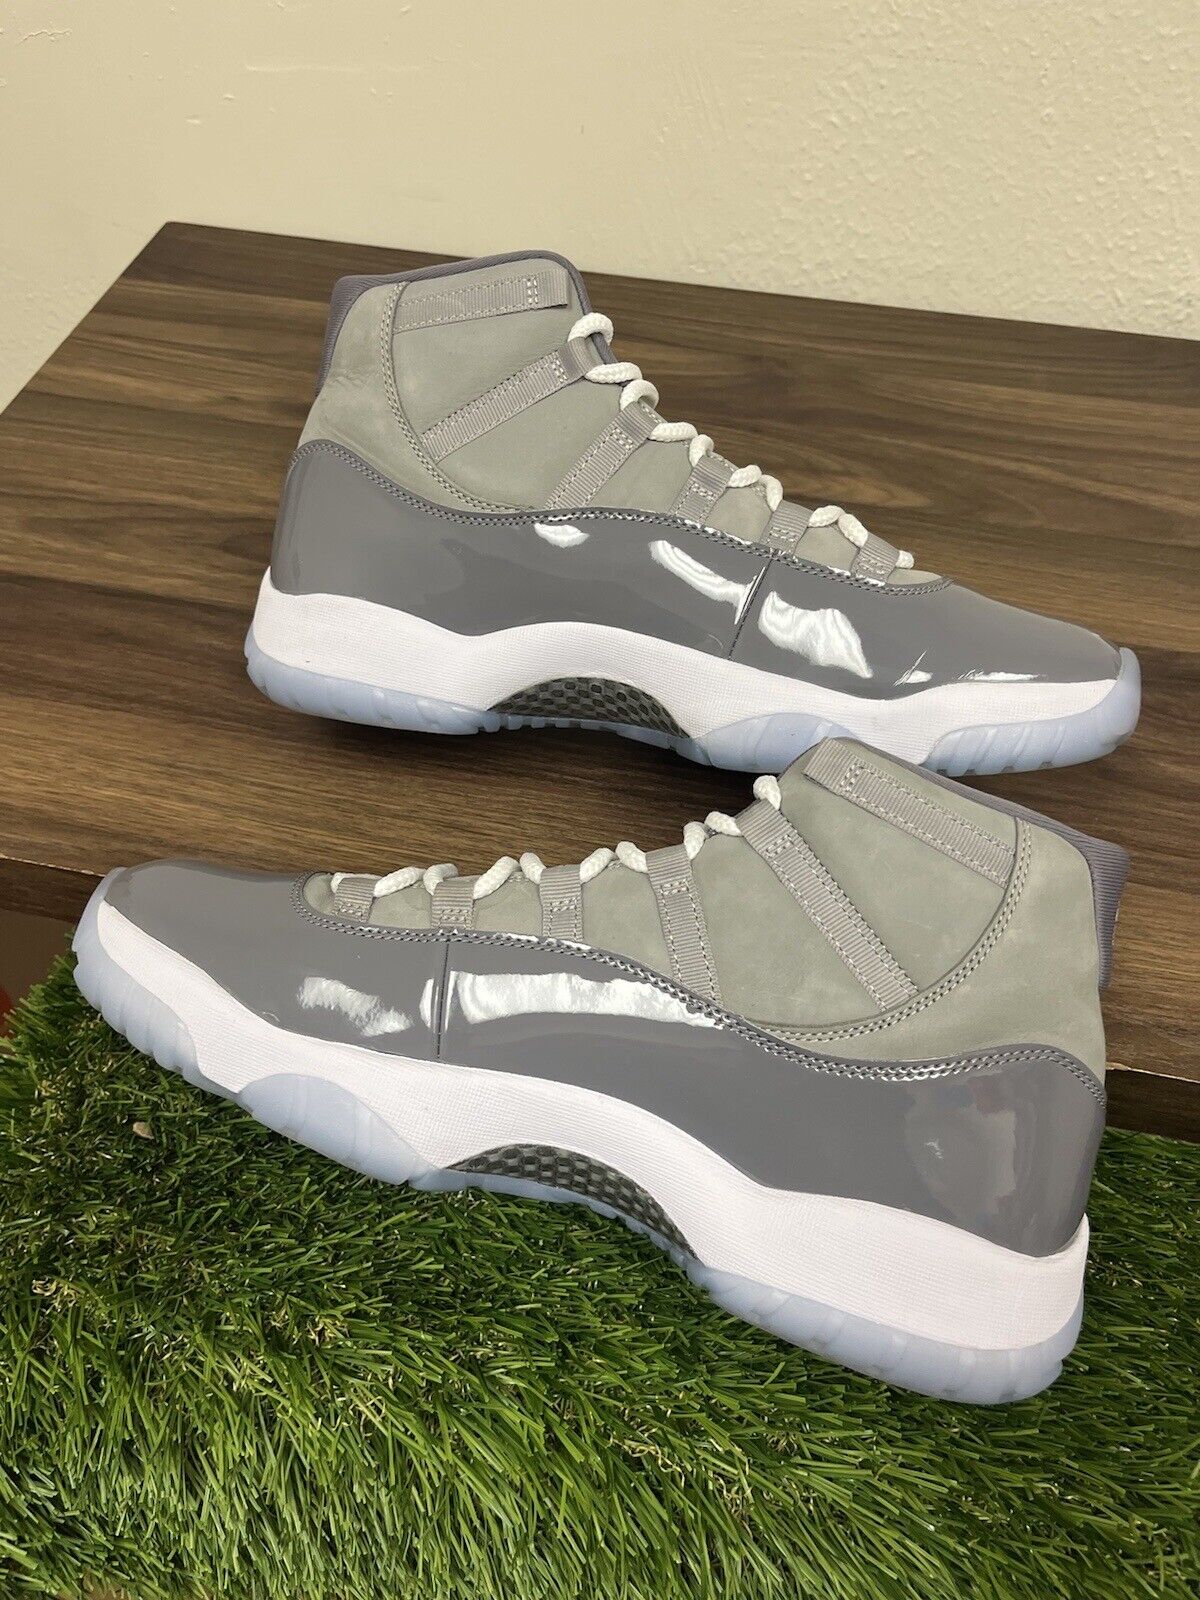 Size 13 - Air Jordan 11 Retro High Cool Grey 2021 CT8012-005 VNDS Mens Sneakers